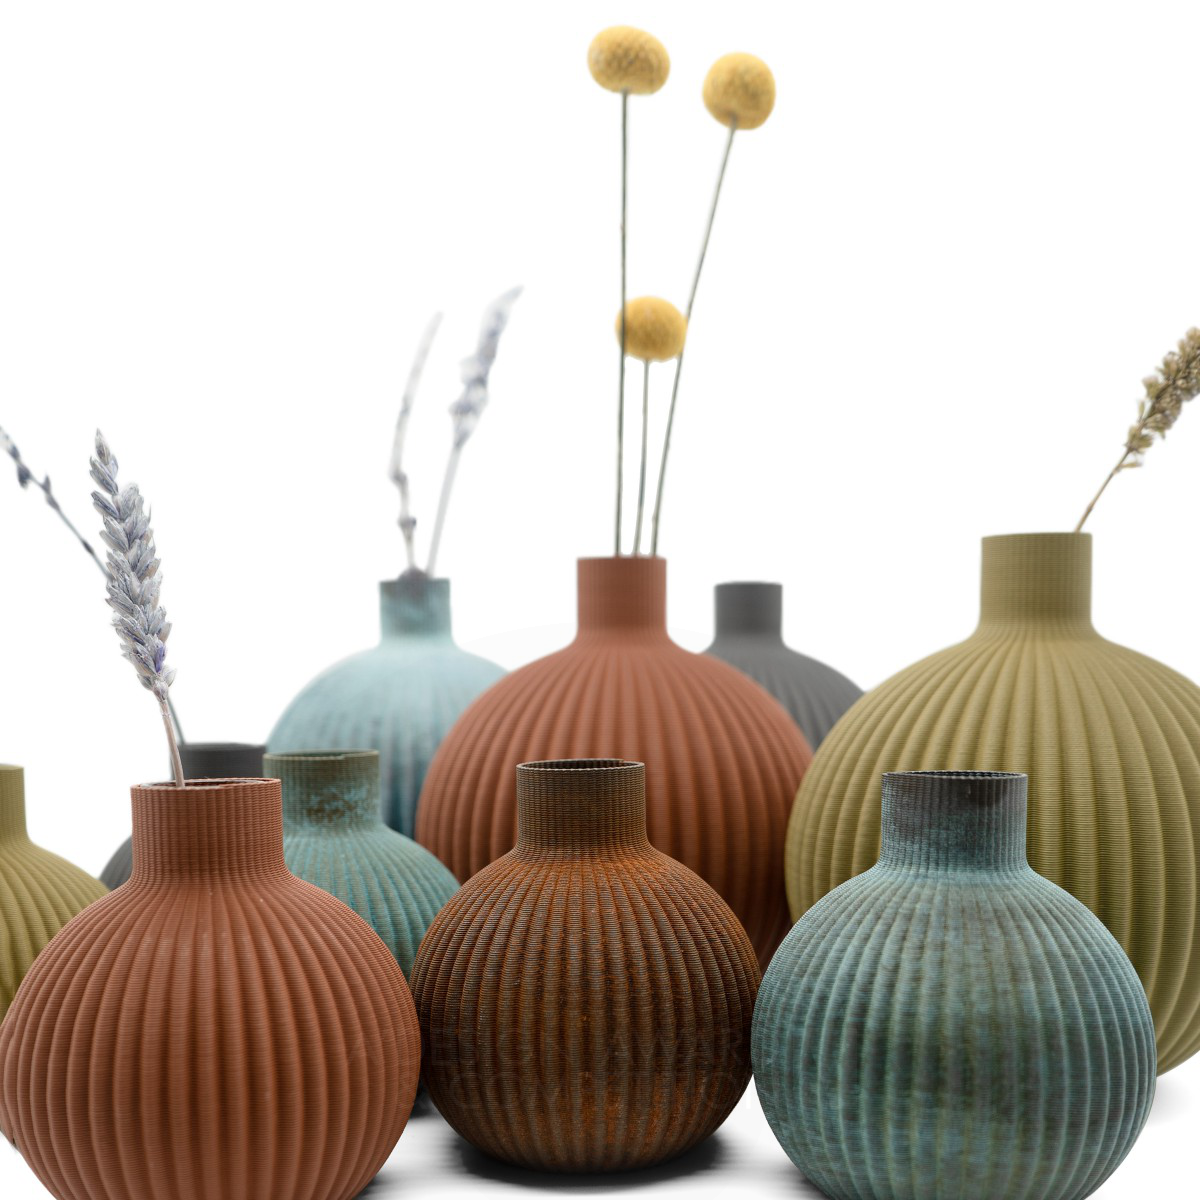 Ribbing Vase by Lihsing Wang